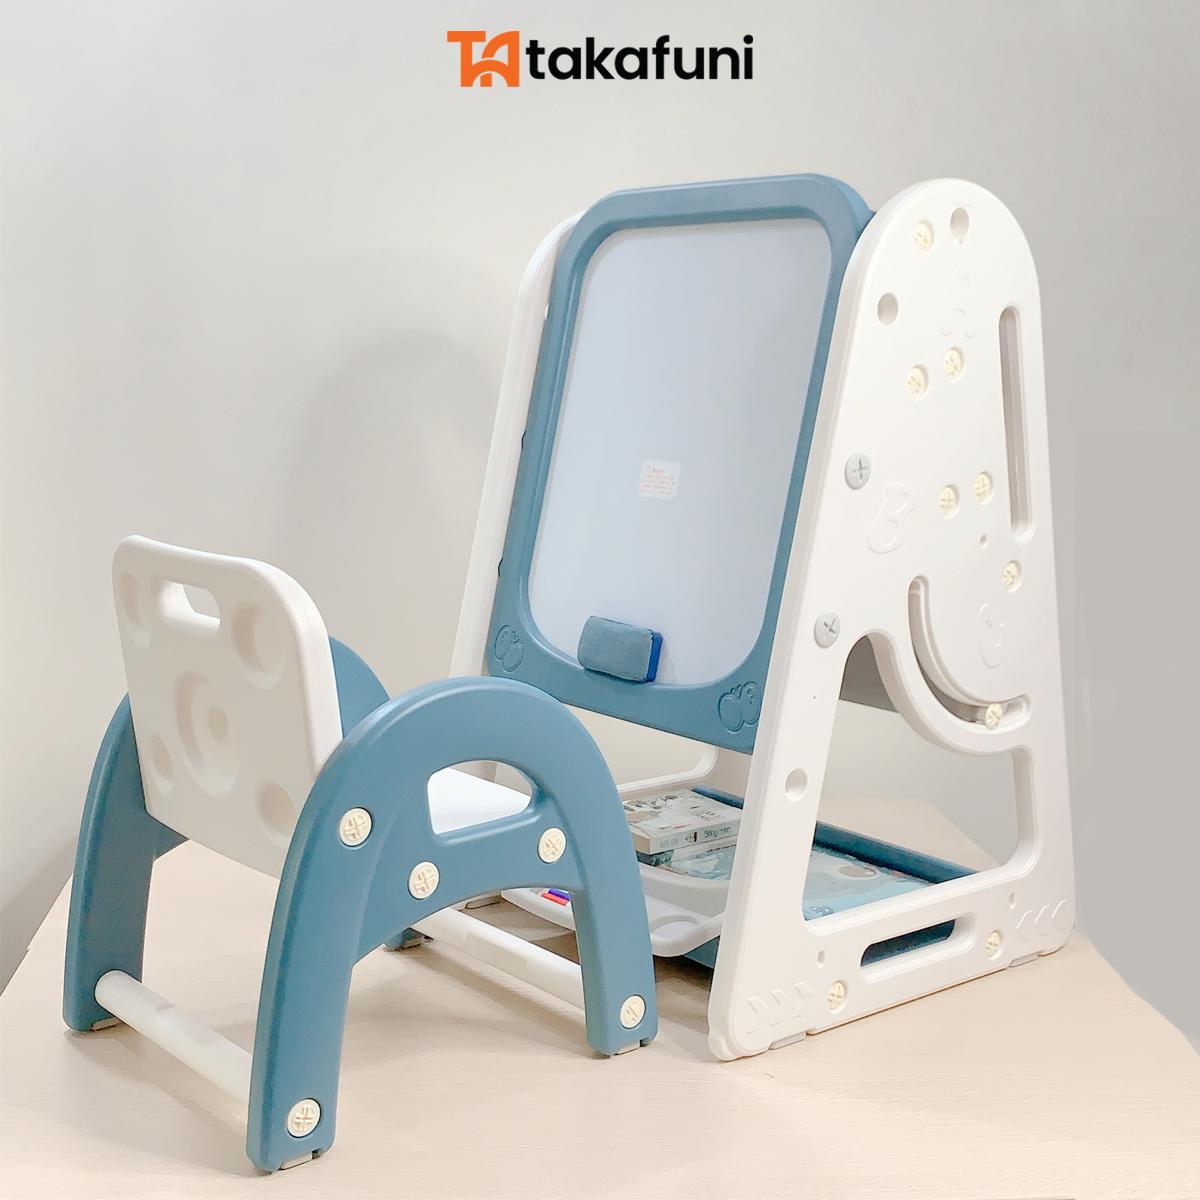 Bộ bàn ghế đa năng Takafuni có kết hợp kệ sách, bút và bộ số nam châm cho bé. Có 3 màu: Xanh, Hồng và xám.